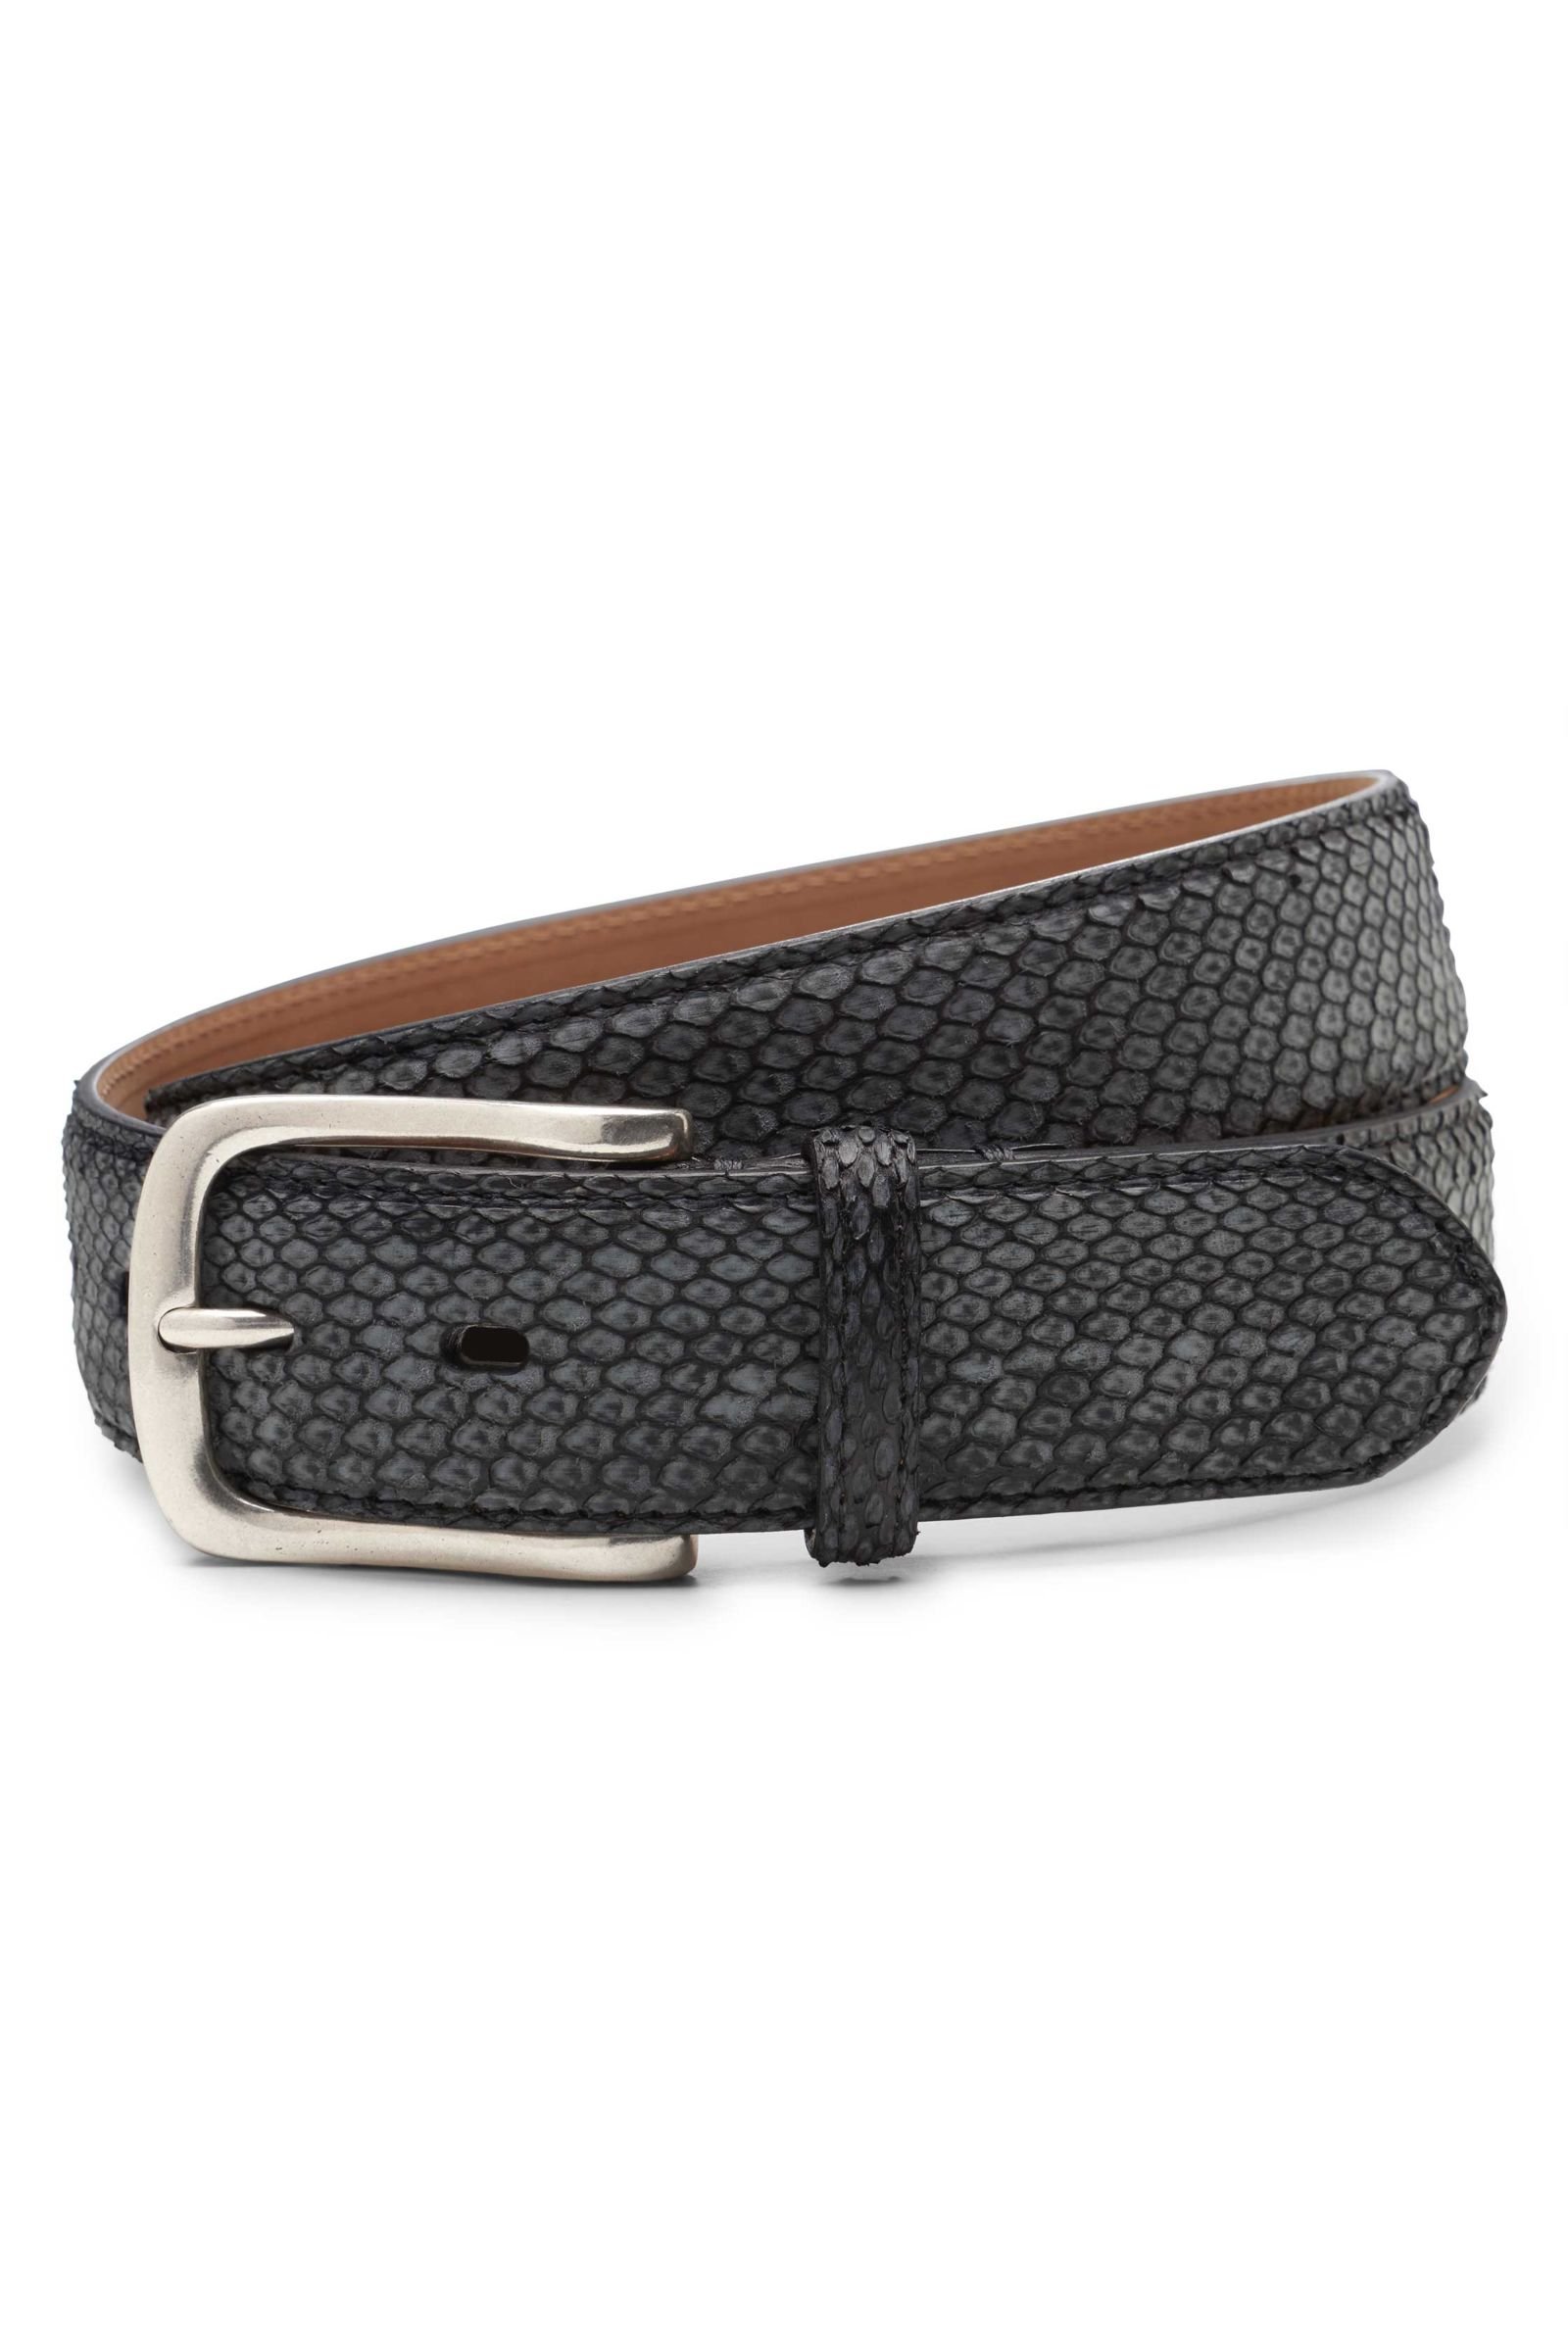 Python leather belt dark grey